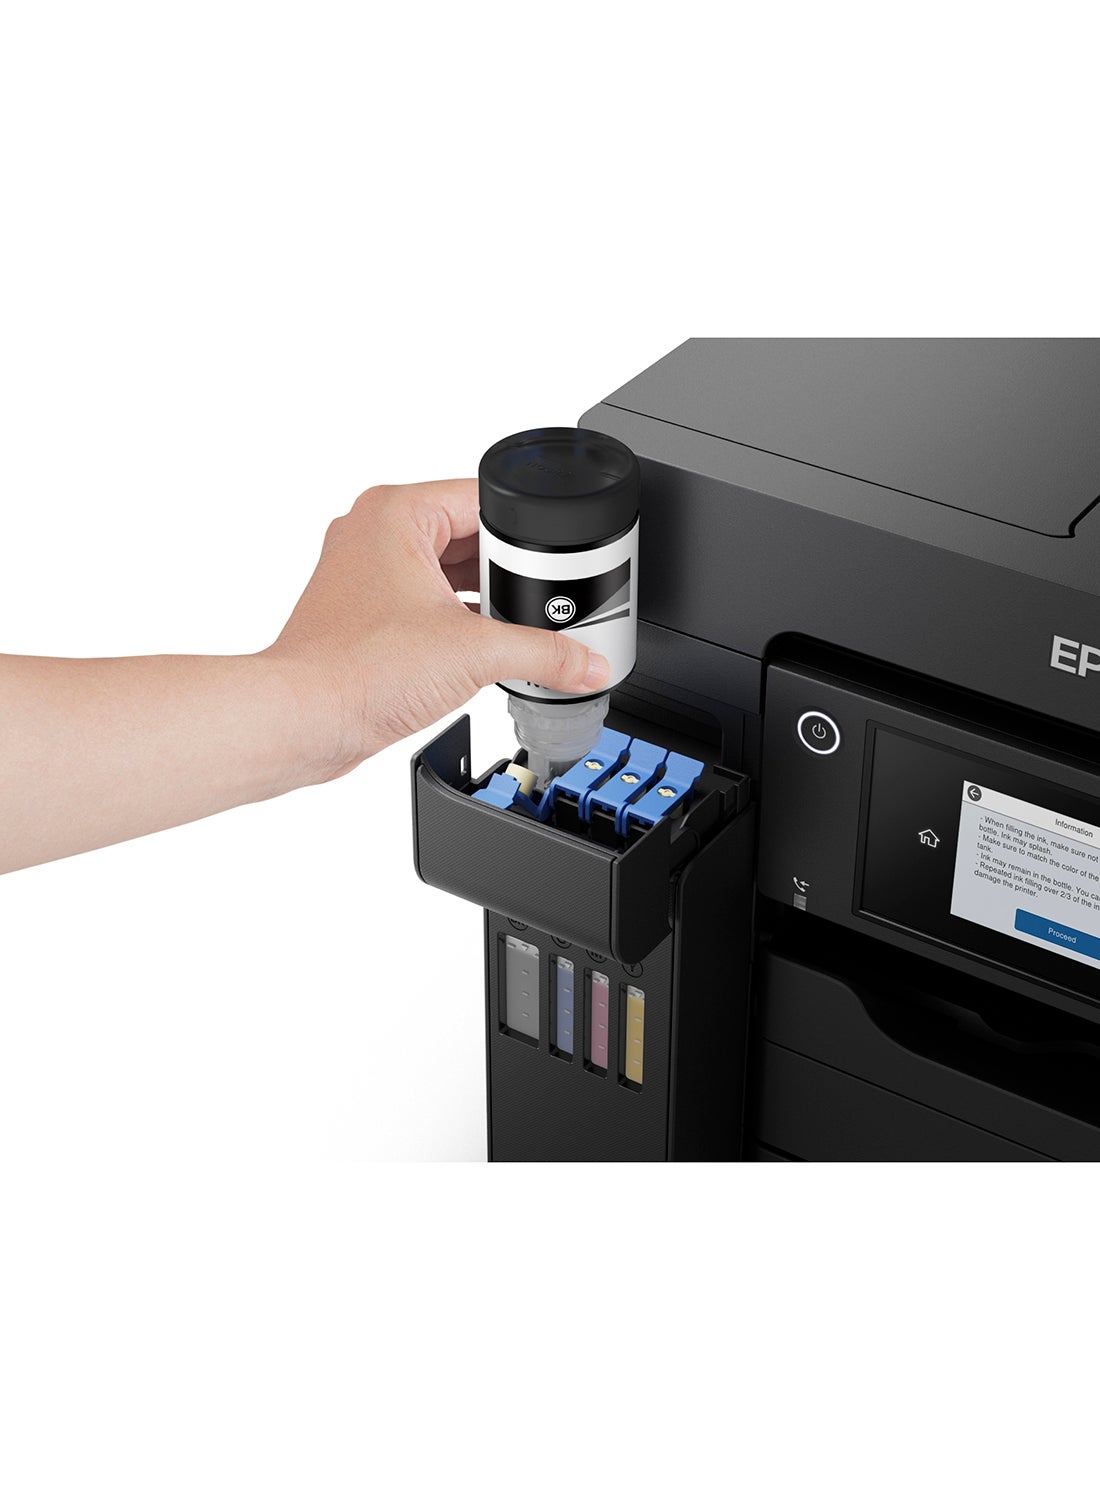 EcoTank L6550 3-in-1 Printer, Scanner, copier Wireless Inktank Black 